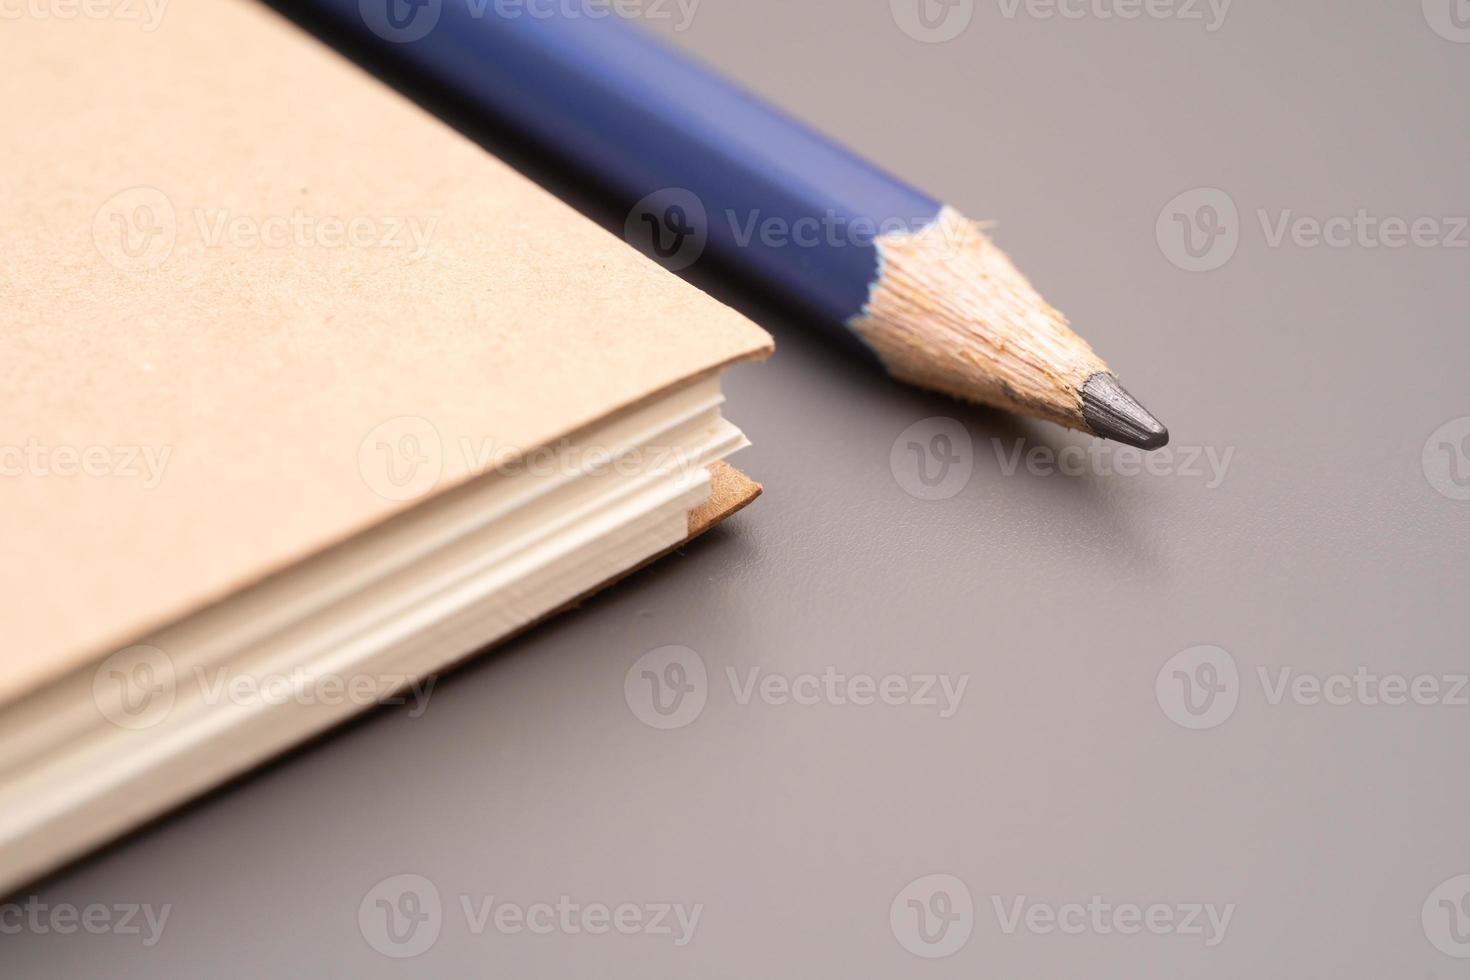 cuaderno de tapa de papel artesanal en blanco cerrado con lápiz. primer plano de artículos de oficina y estudio. foto